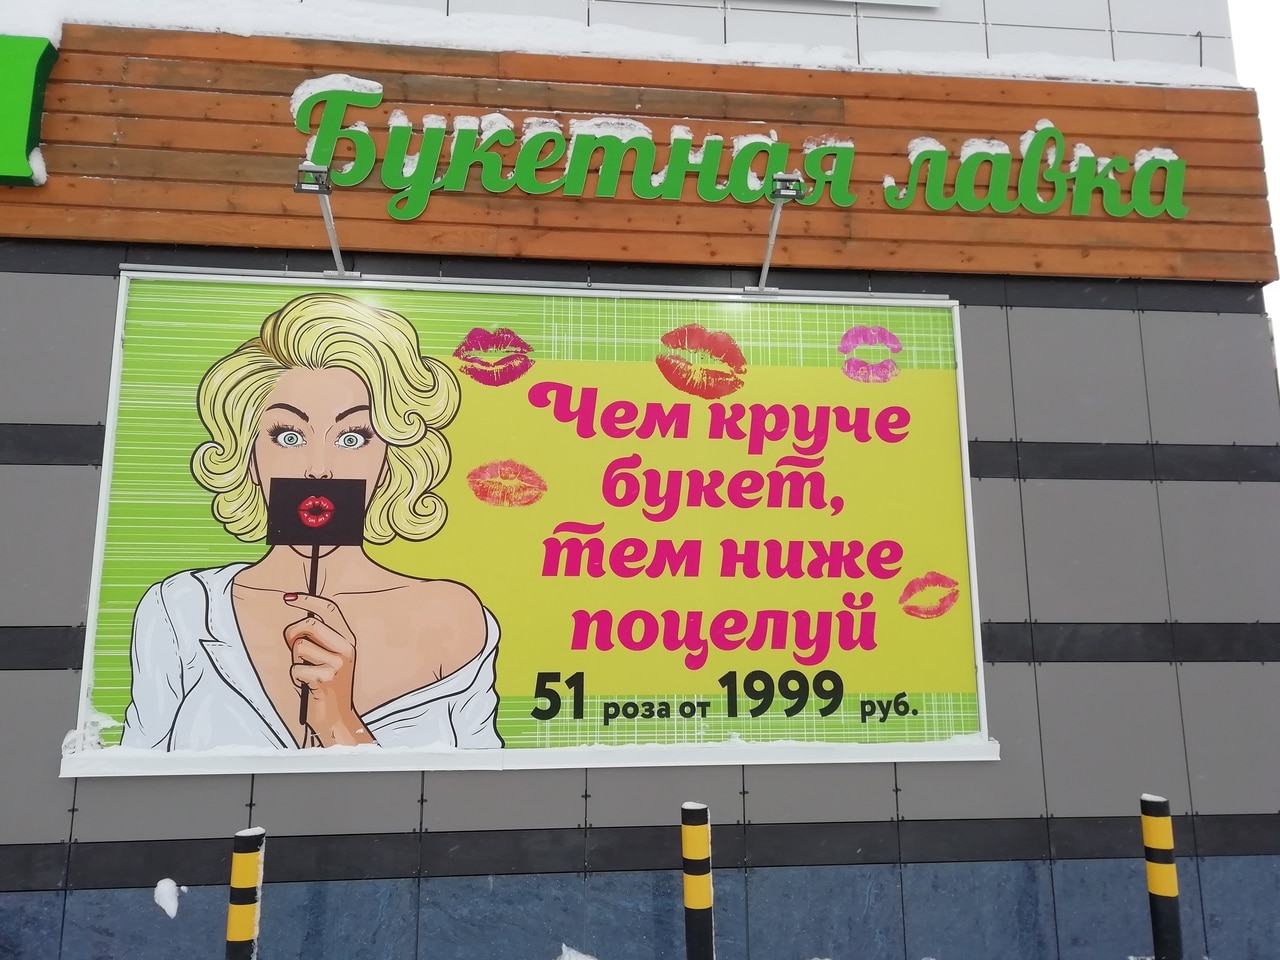 Томские новости, опрос закон антимонопольщики непристойная реклама Томичам предлагают оценить пристойность рекламы цветочного магазина